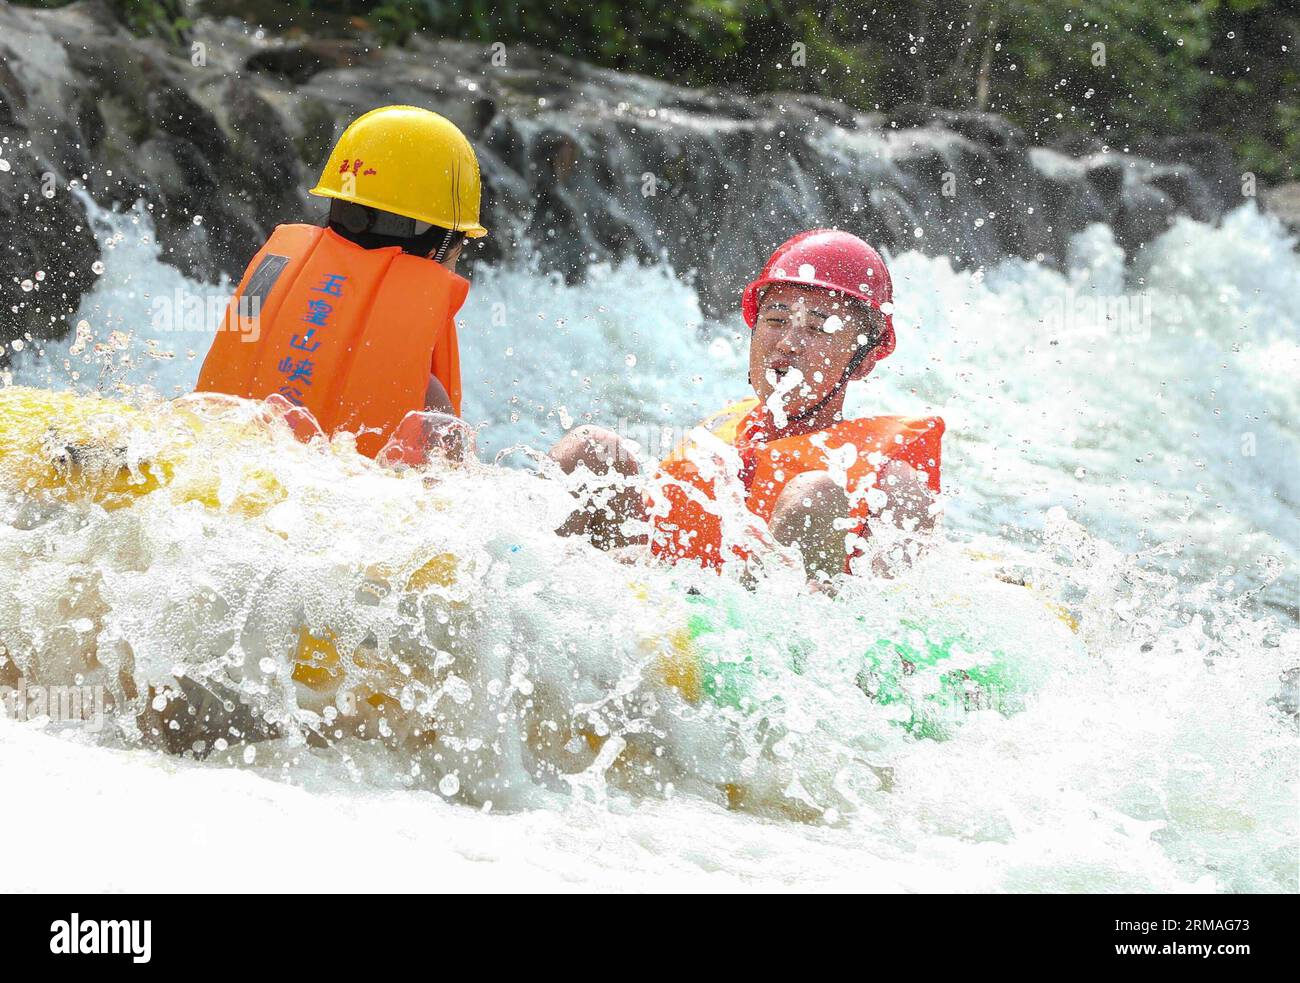 (140708) -- HUAI AN, July 8, 2014 (Xinhua) -- Tourists enjoy rafting in a valley within the Yuhuangshan Amusement Park in Heqiao Town of Xuyi County, east China s Jiangsu Province, July 8, 2014. Many people sought refuge in whitewater rafting against the summer heat. (Xinhua/Zhou Haijun) (lmm) CHINA-SUMMER-LEISURE-RAFTING (CN) PUBLICATIONxNOTxINxCHN   Huai to July 8 2014 XINHUA tourists Enjoy Rafting in a Valley Within The  Amusement Park in  Town of Xuyi County East China S Jiangsu Province July 8 2014 MANY Celebrities sought Refuge in Whitewater Rafting against The Summer Heat XINHUA Zhou Ha Stock Photo